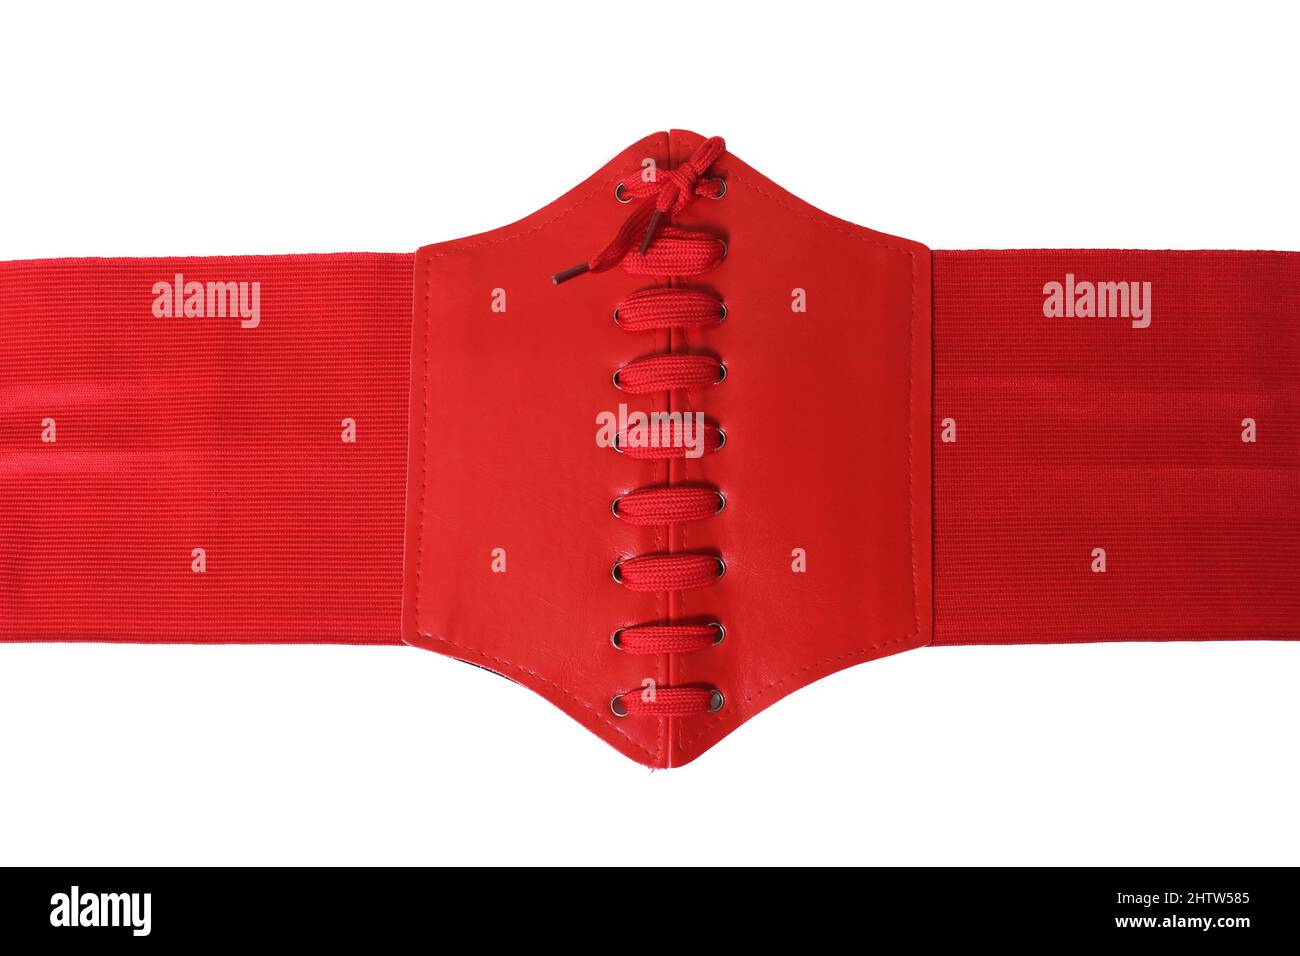 Red corset immagini e fotografie stock ad alta risoluzione - Alamy